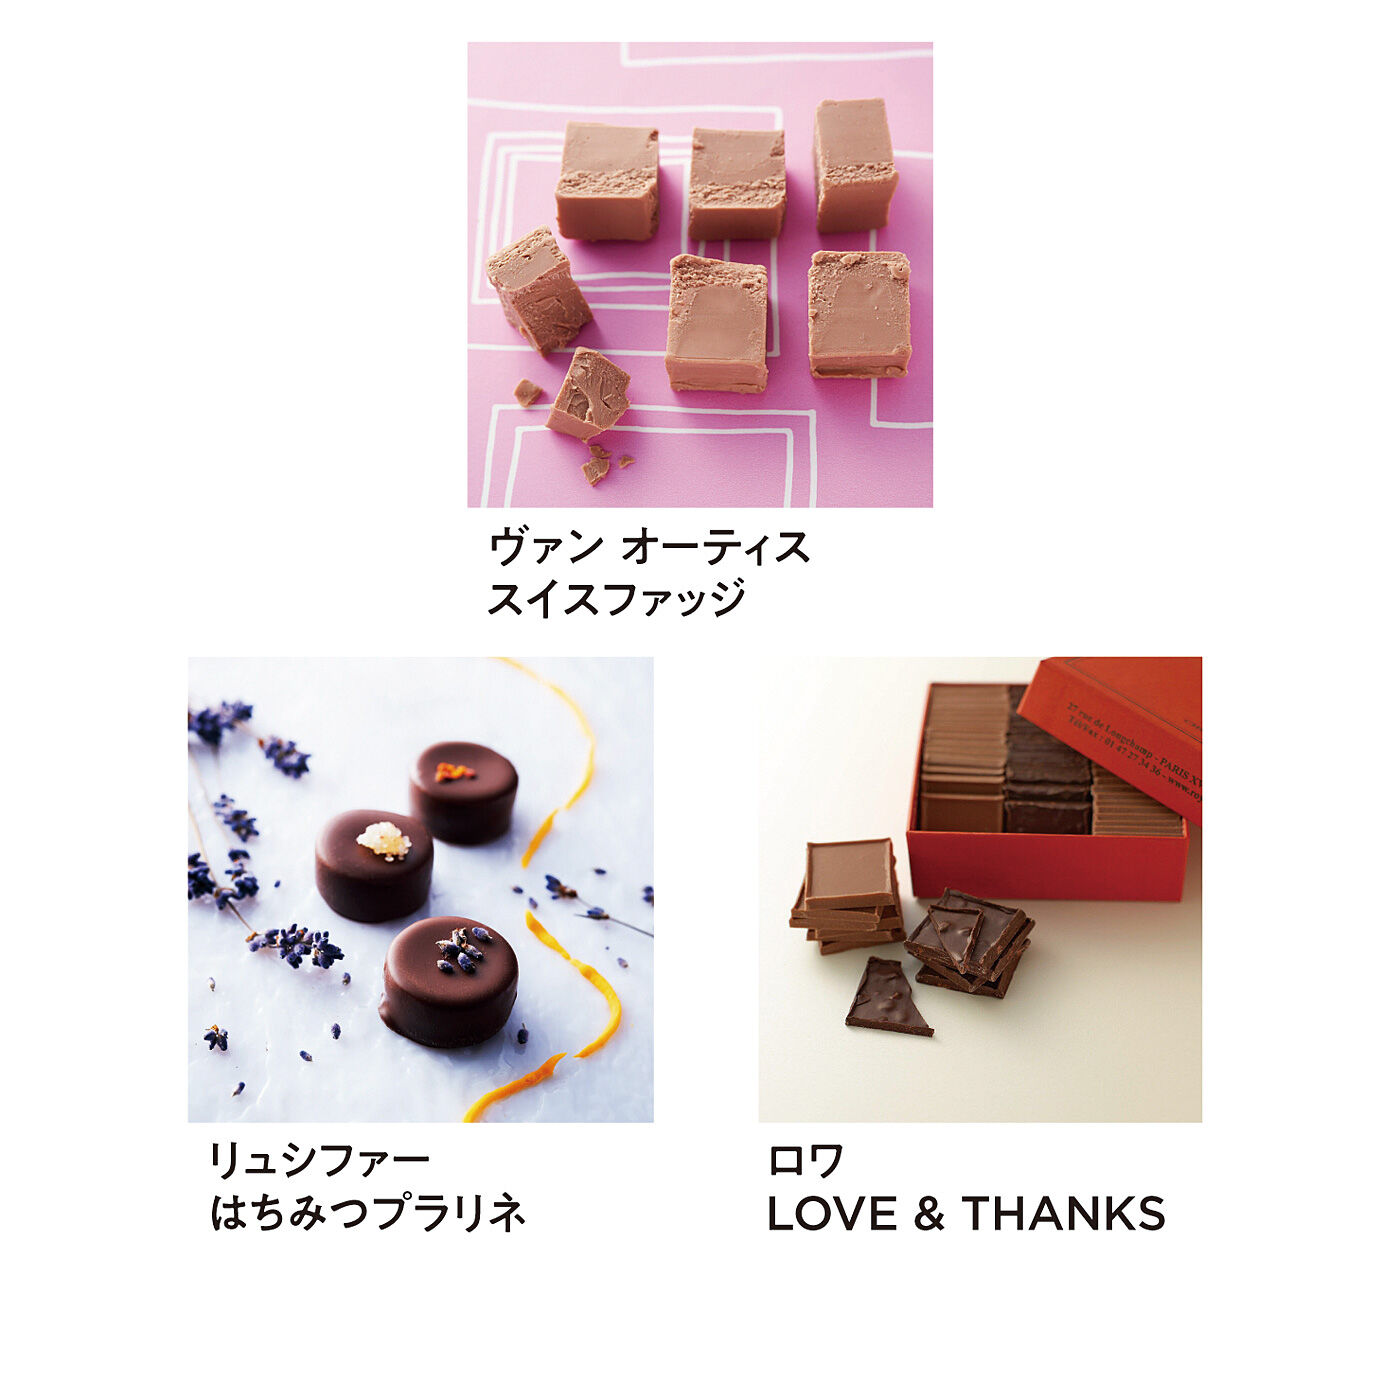 幸福のチョコレート|幸福のチョコレート講座　試食チョコセット（９粒入り）〈人気定番コース〉|※商品の色や形が変更になる場合があります。